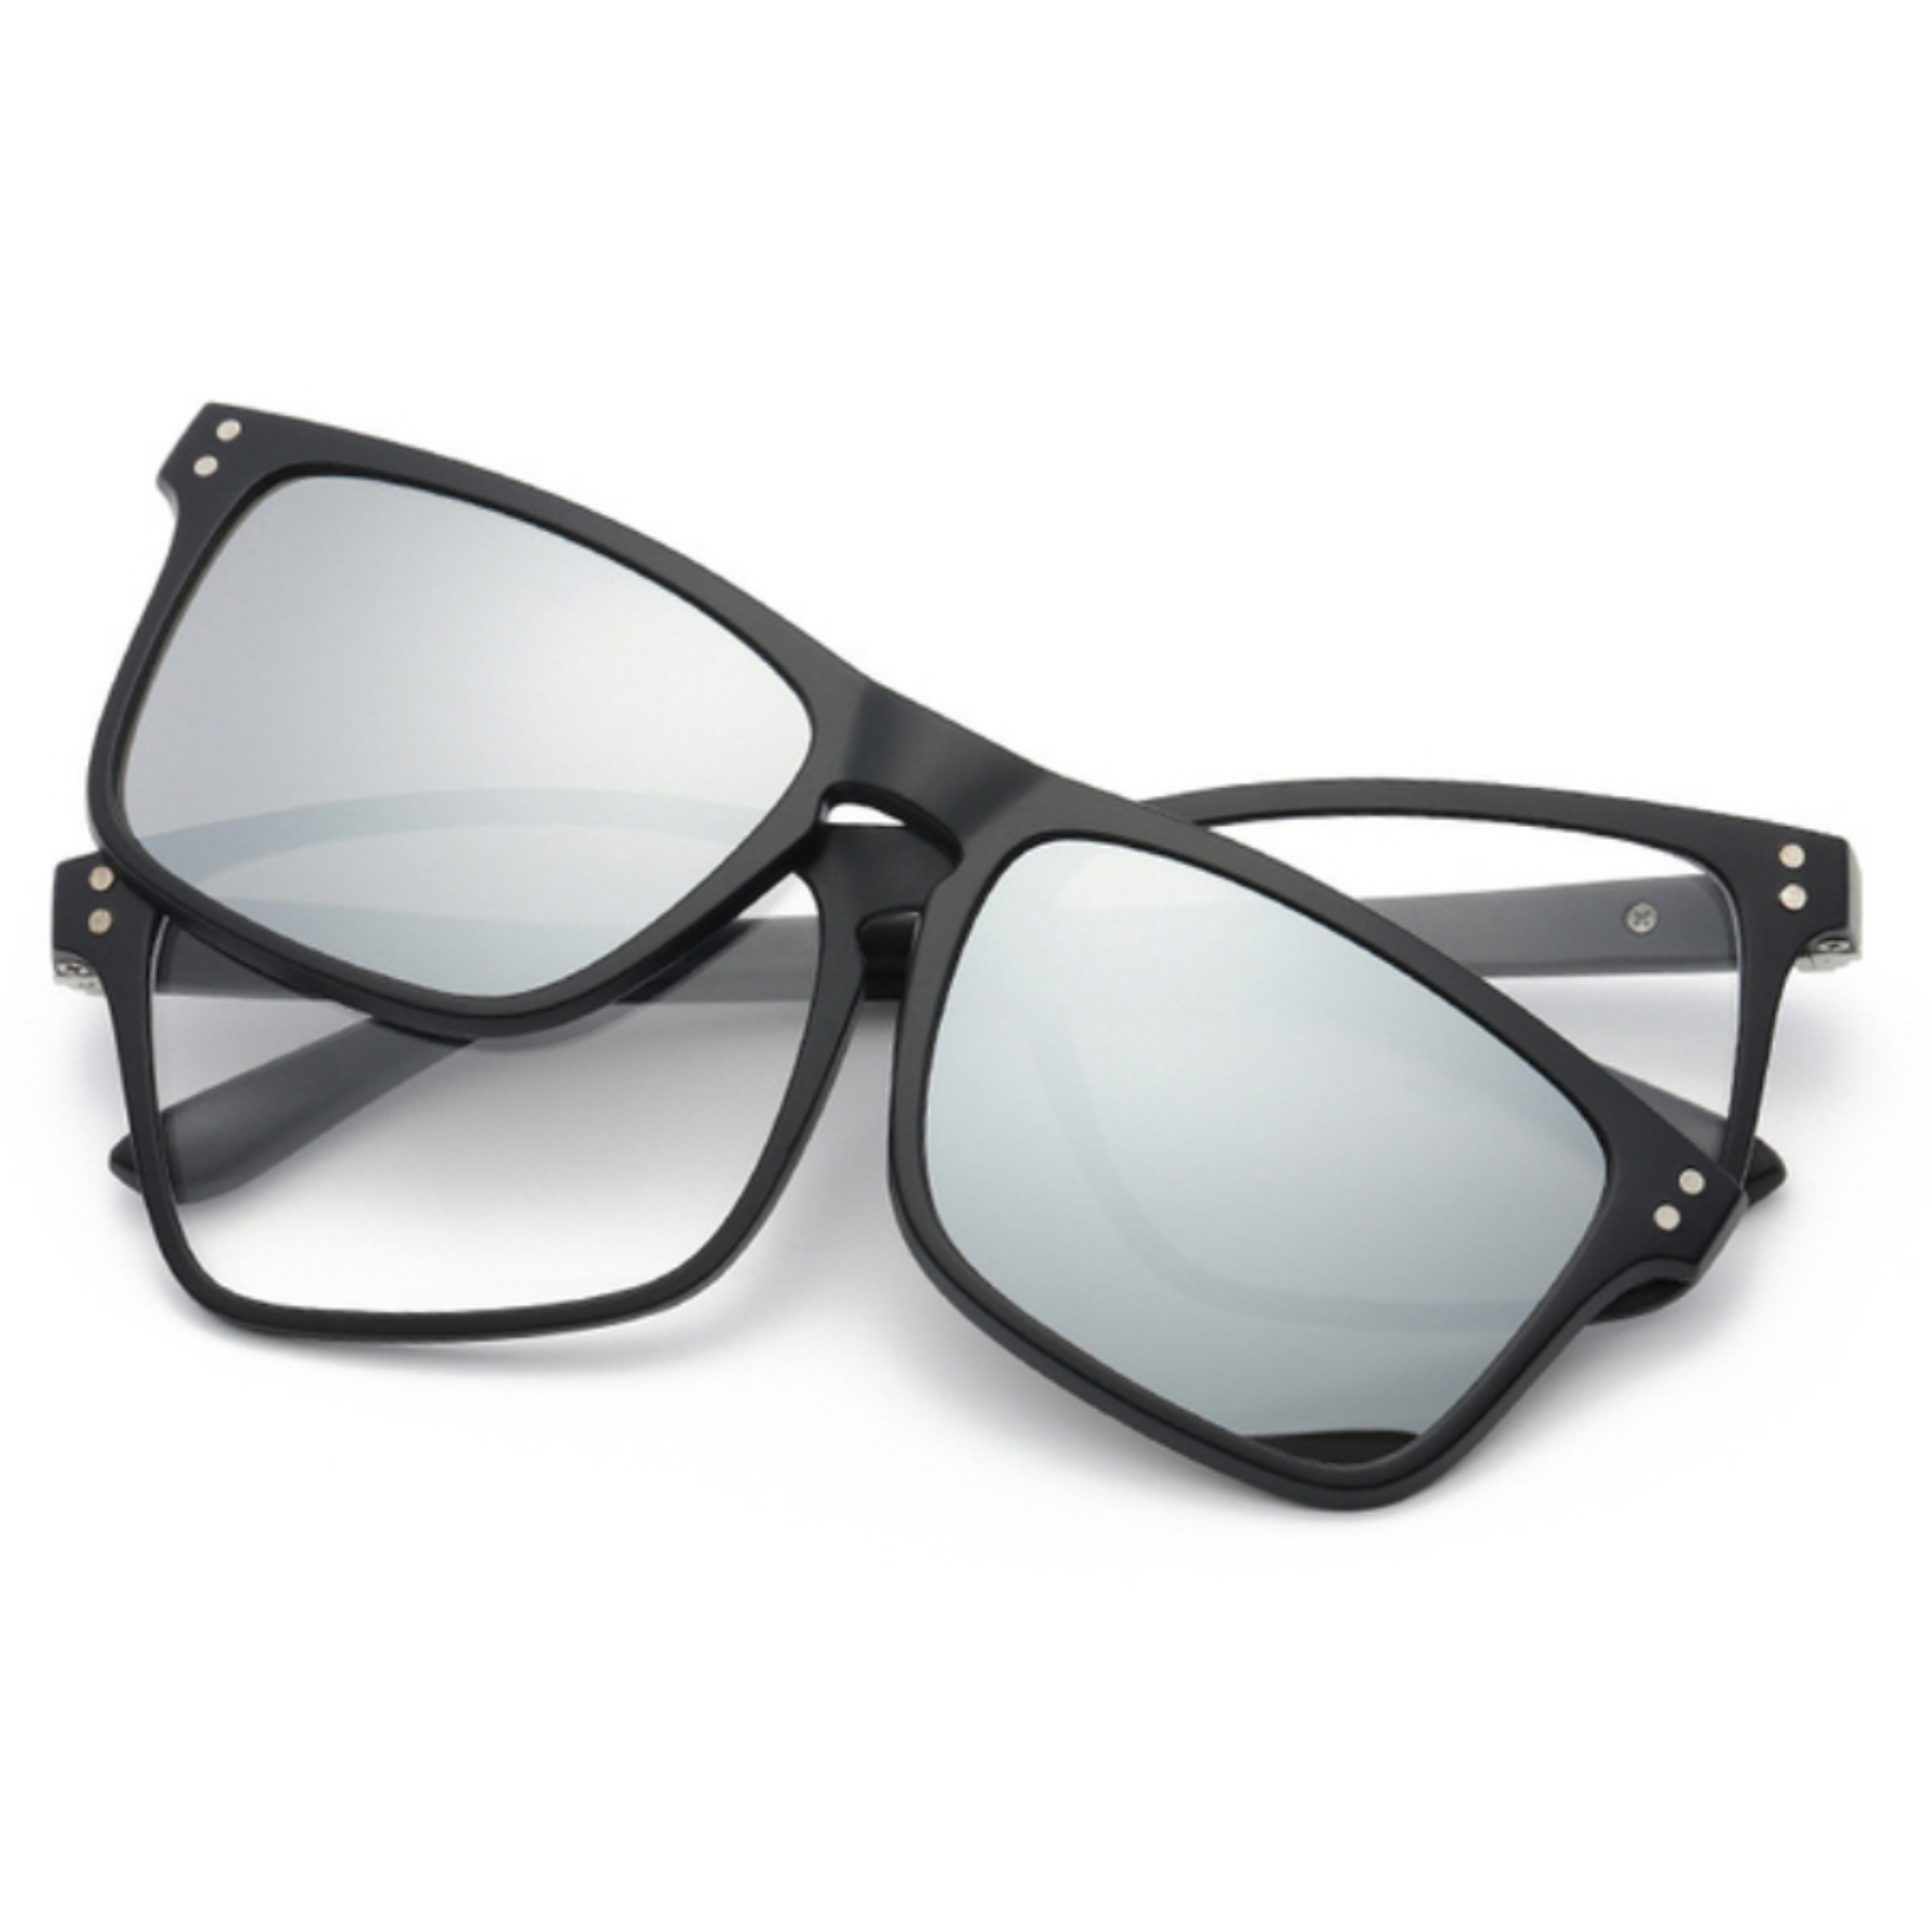 rectangular clip en anteojos de protección UV400 gafas